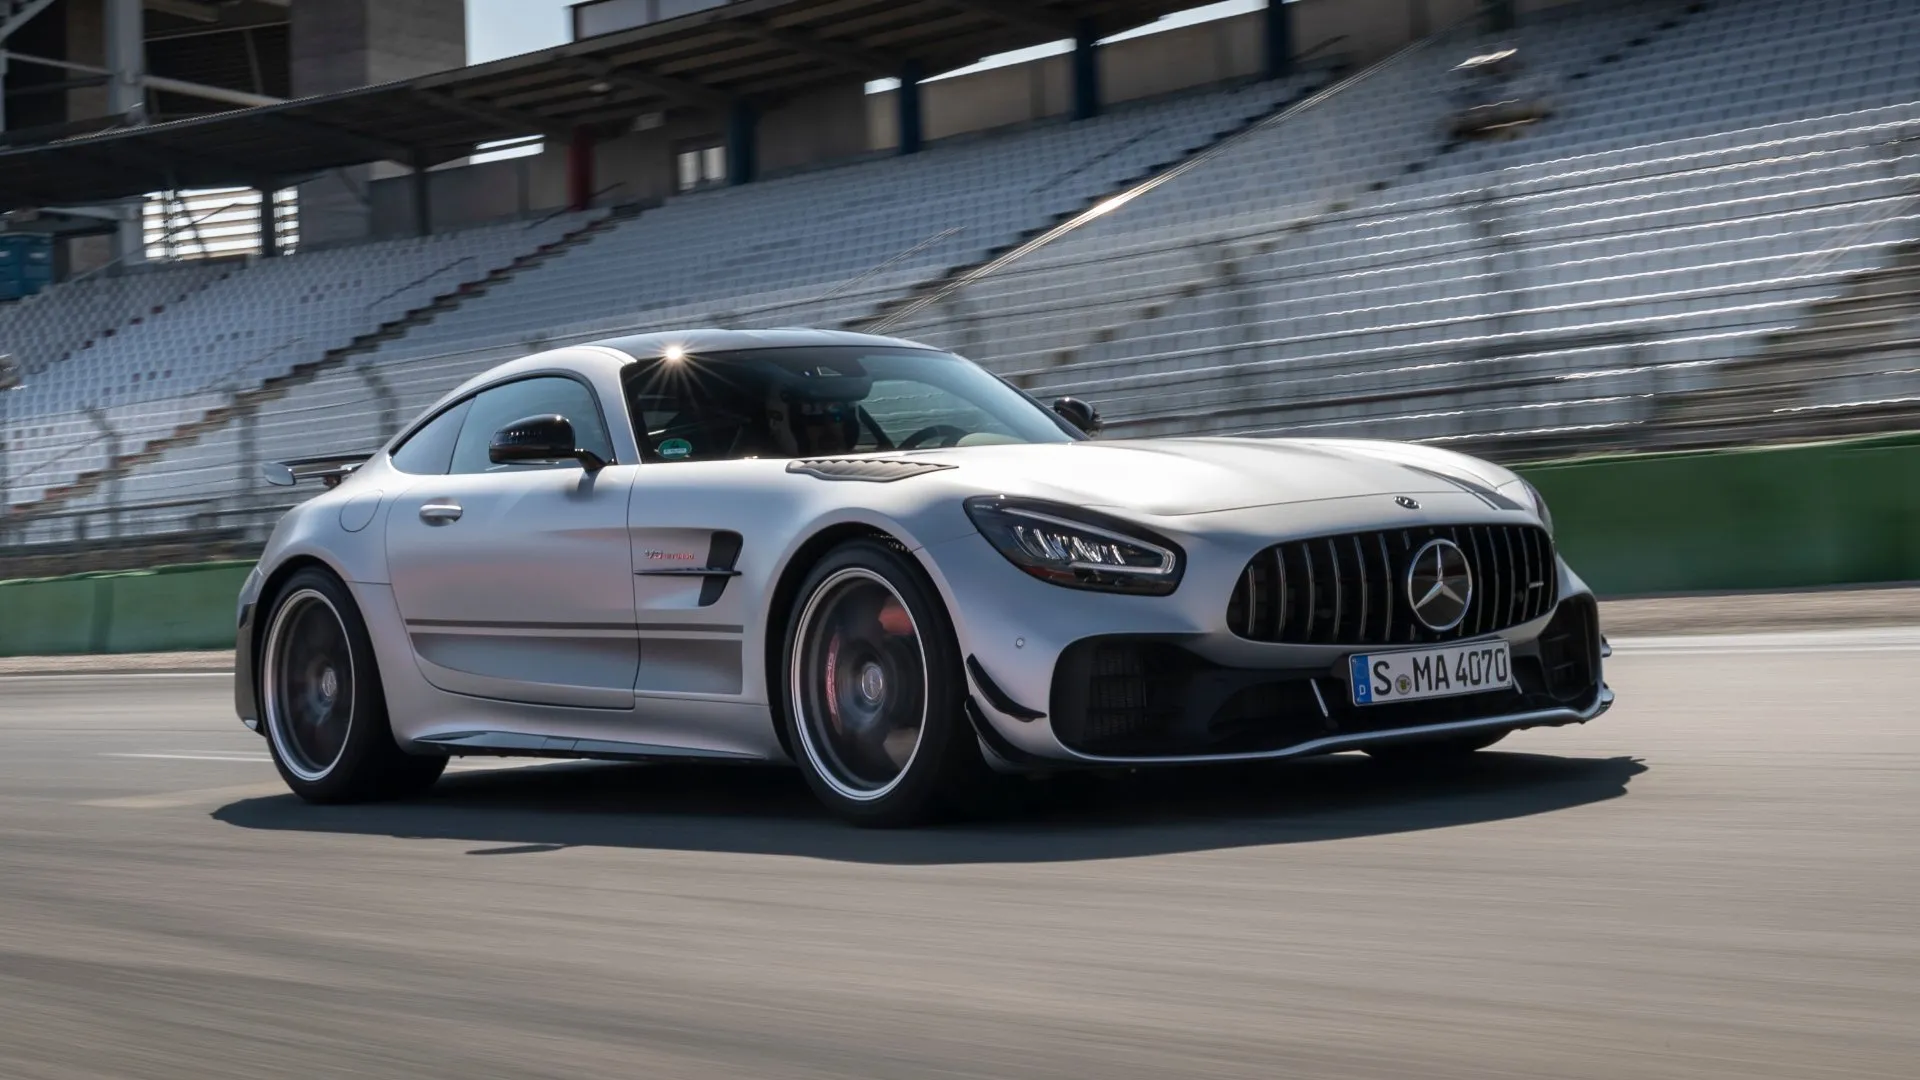 El próximo Mercedes-AMG GT apostará por una conducción más pura y pasional